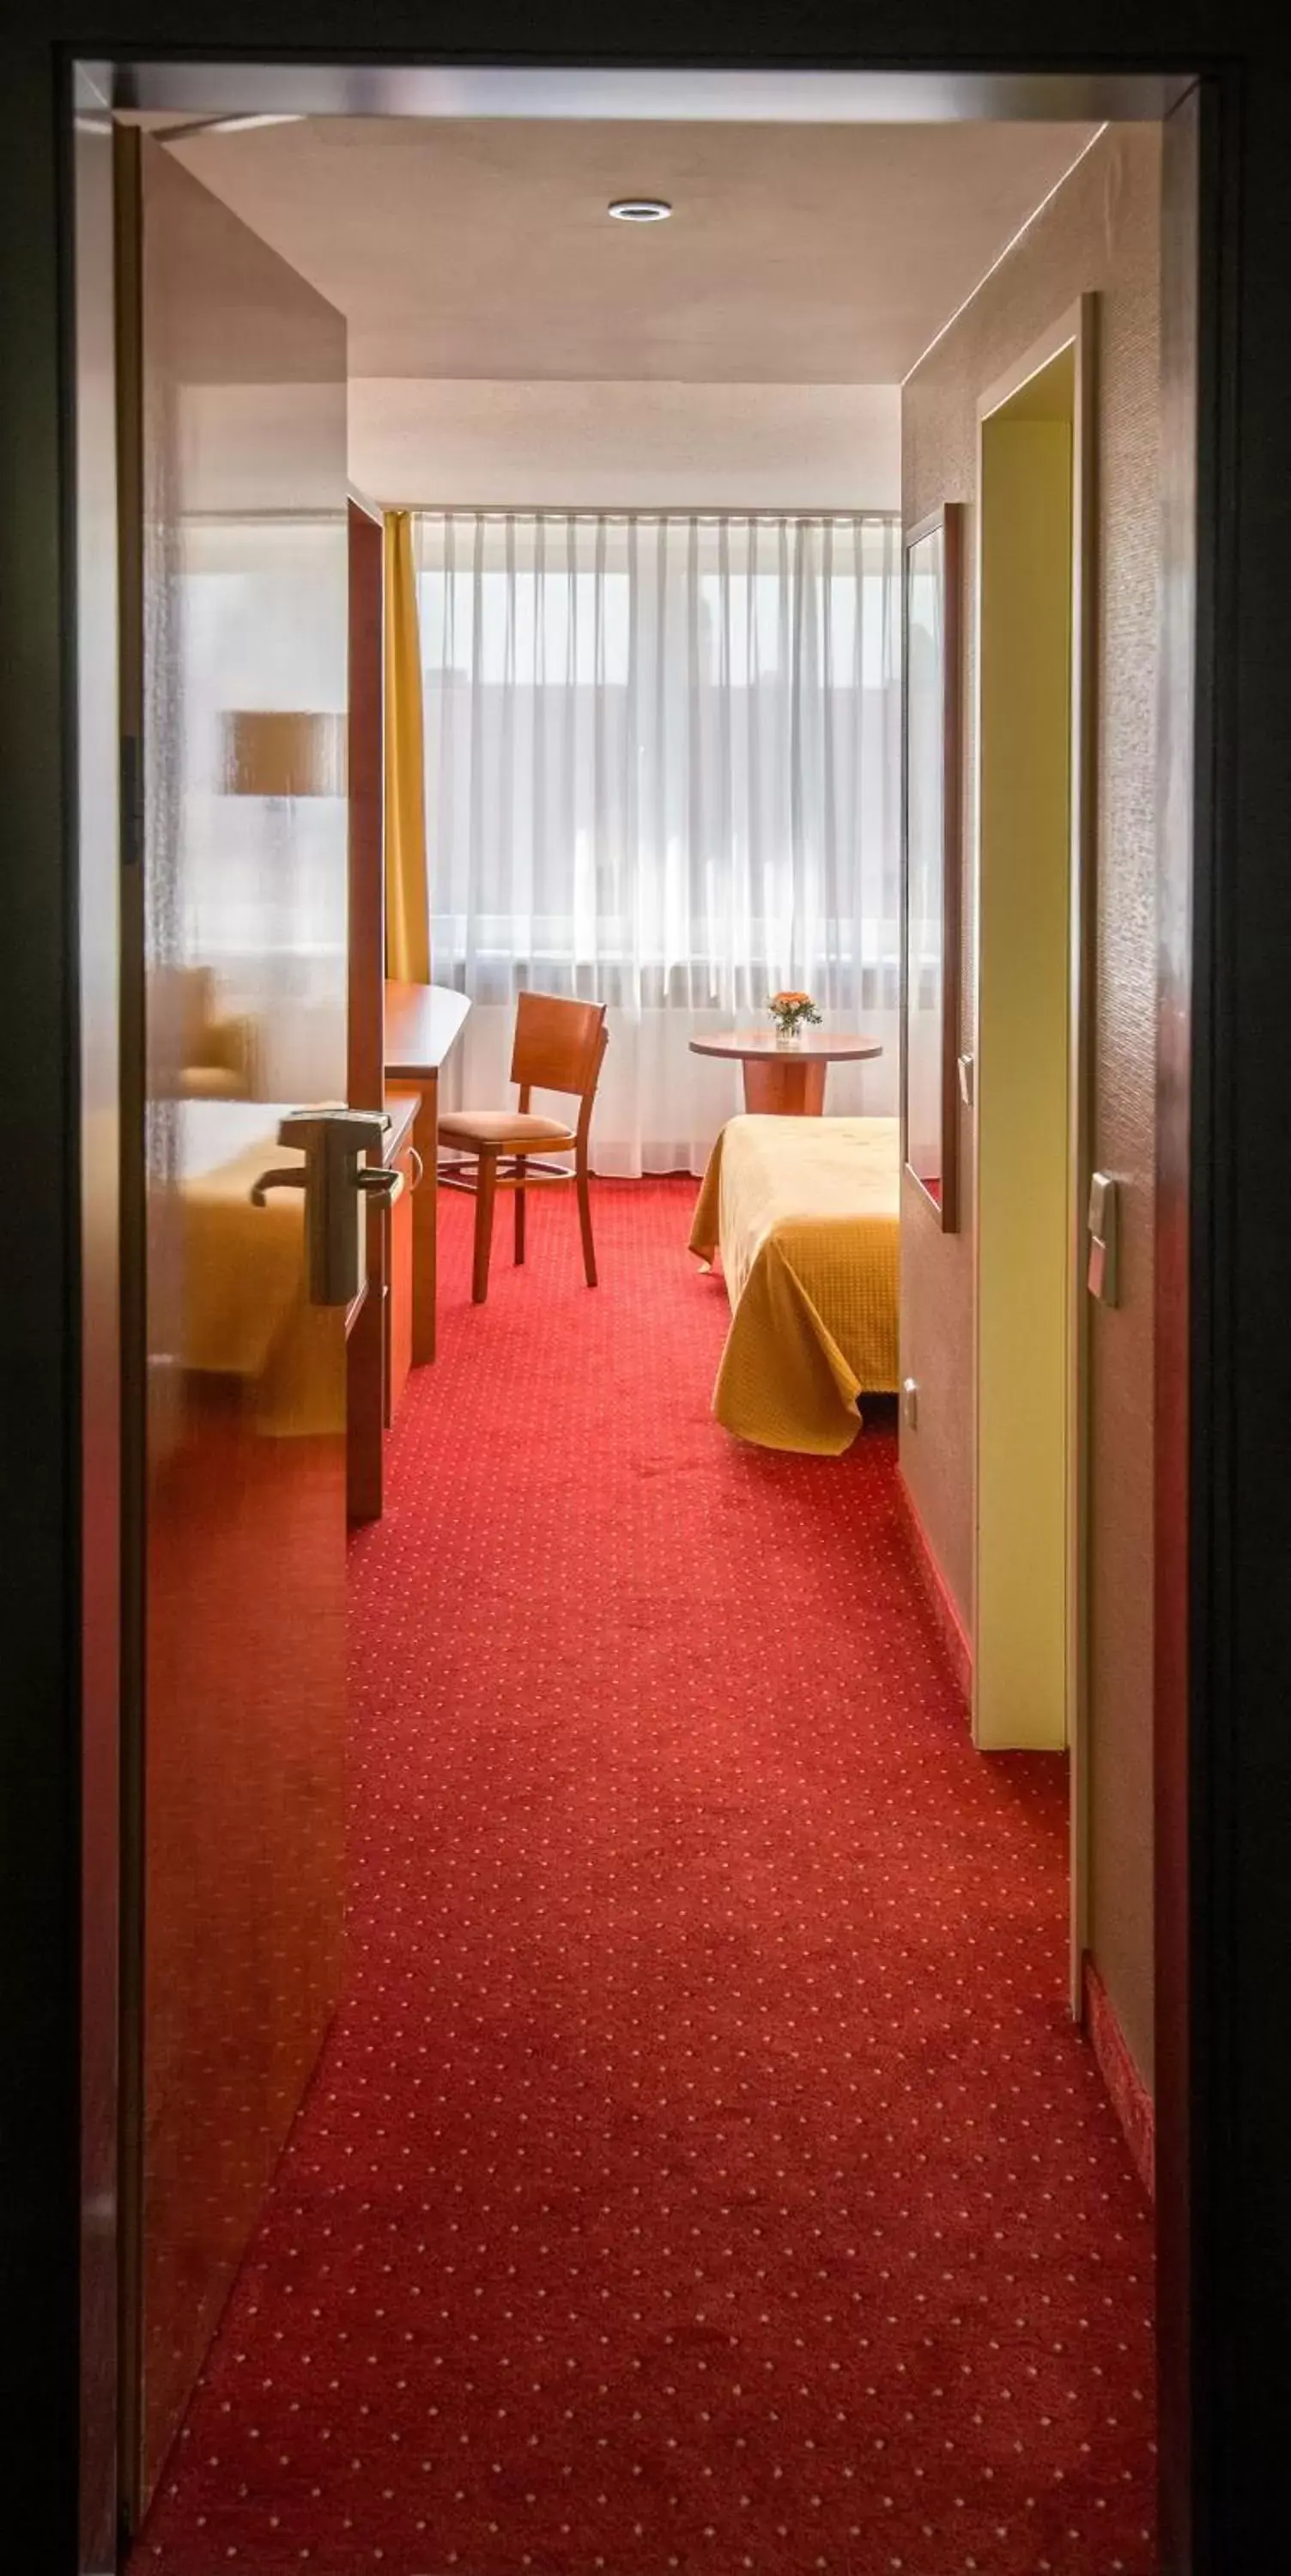 Decorative detail, Banquet Facilities in Best Western Plus Hotel Bautzen